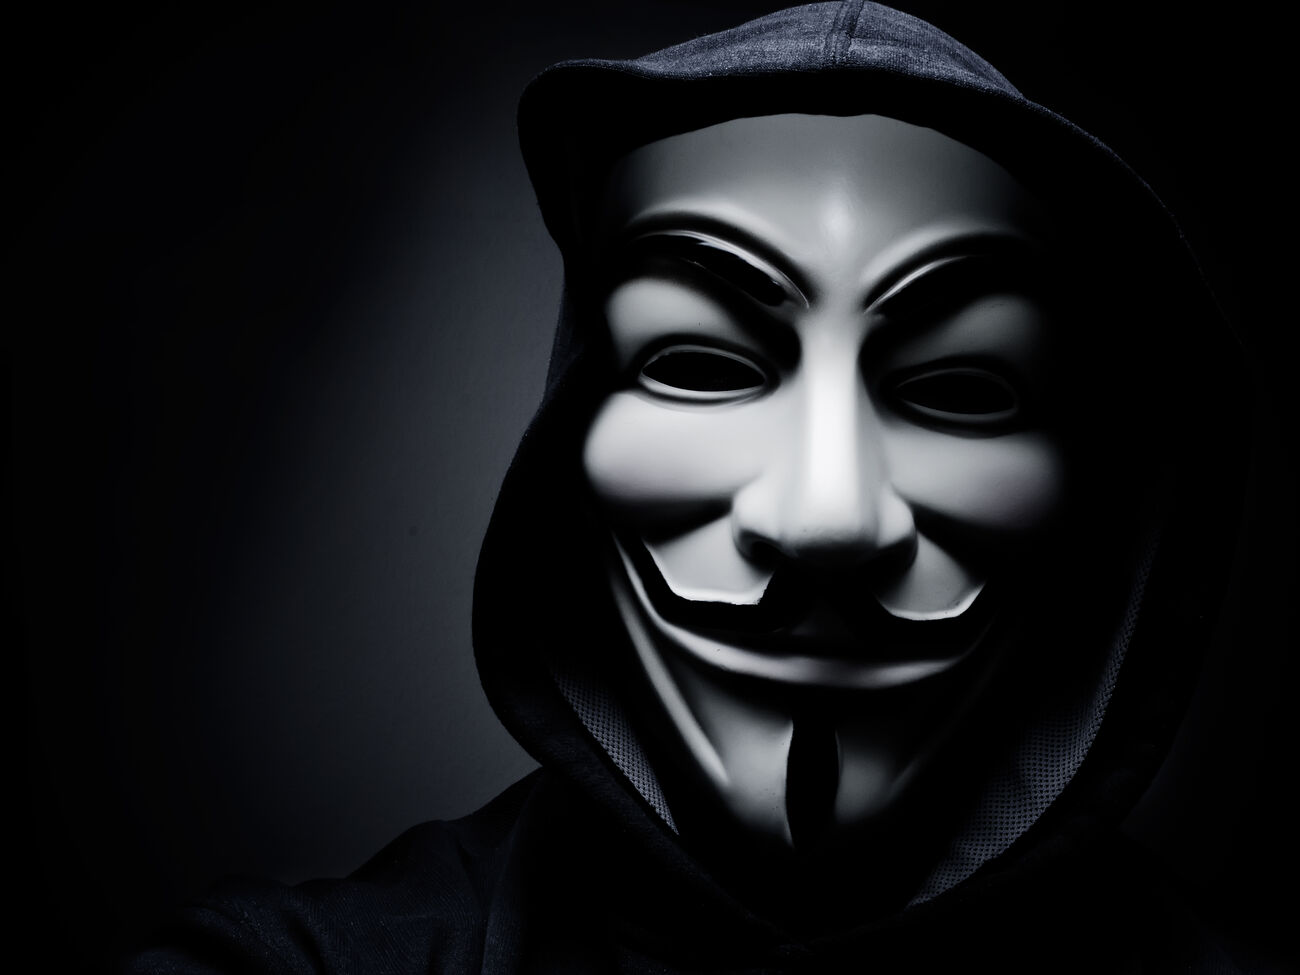 Anonymous obtuvo acceso al sistema de videovigilancia del Kremlin